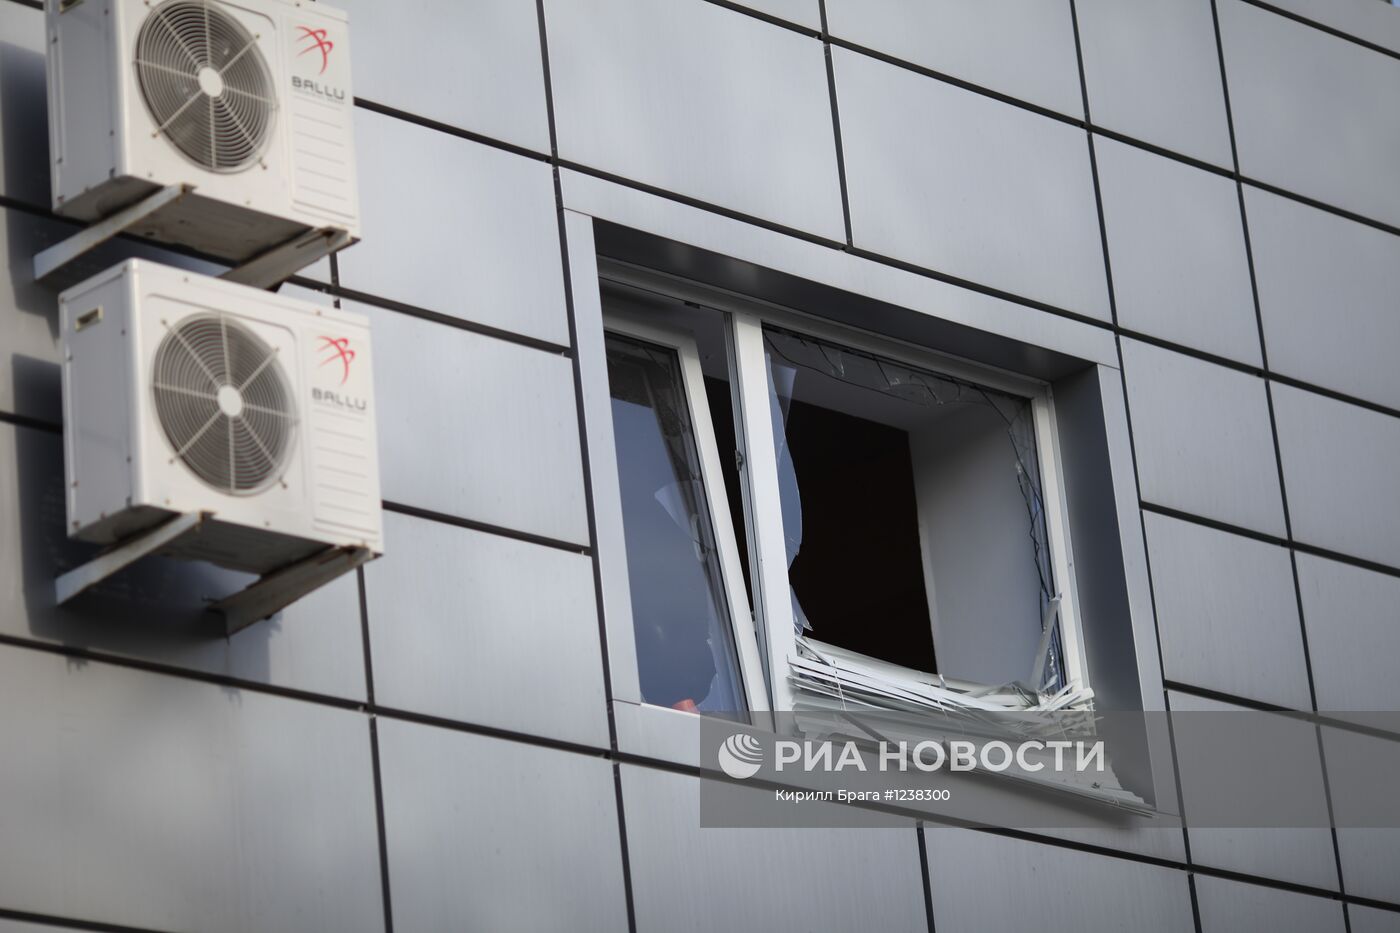 Взрыв на автомойке рядом с развлекательным центром в Волгограде